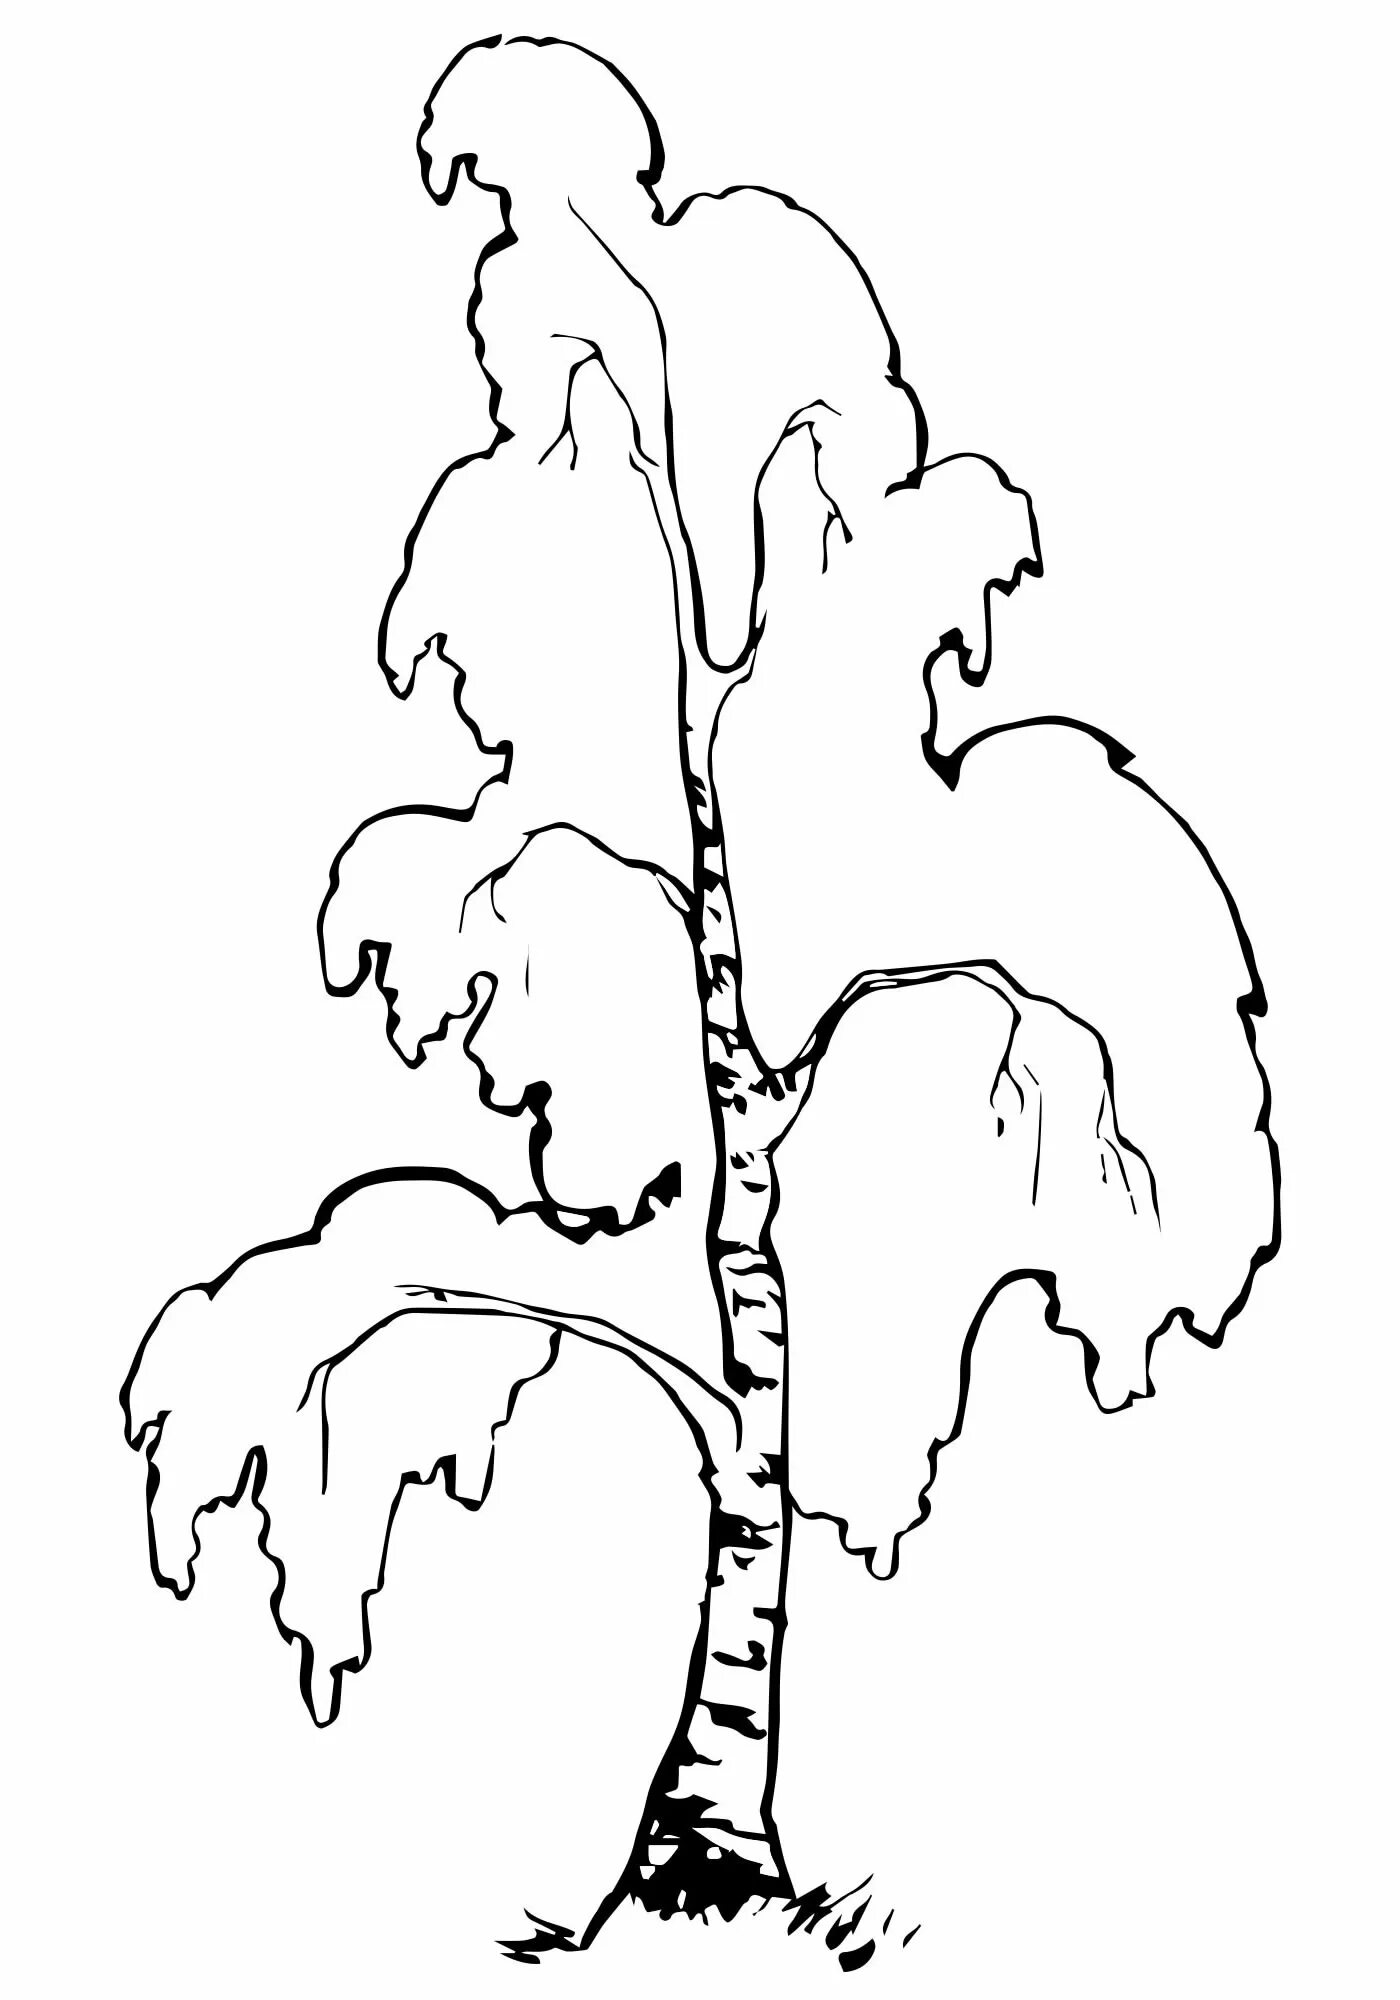 Birch tree #8